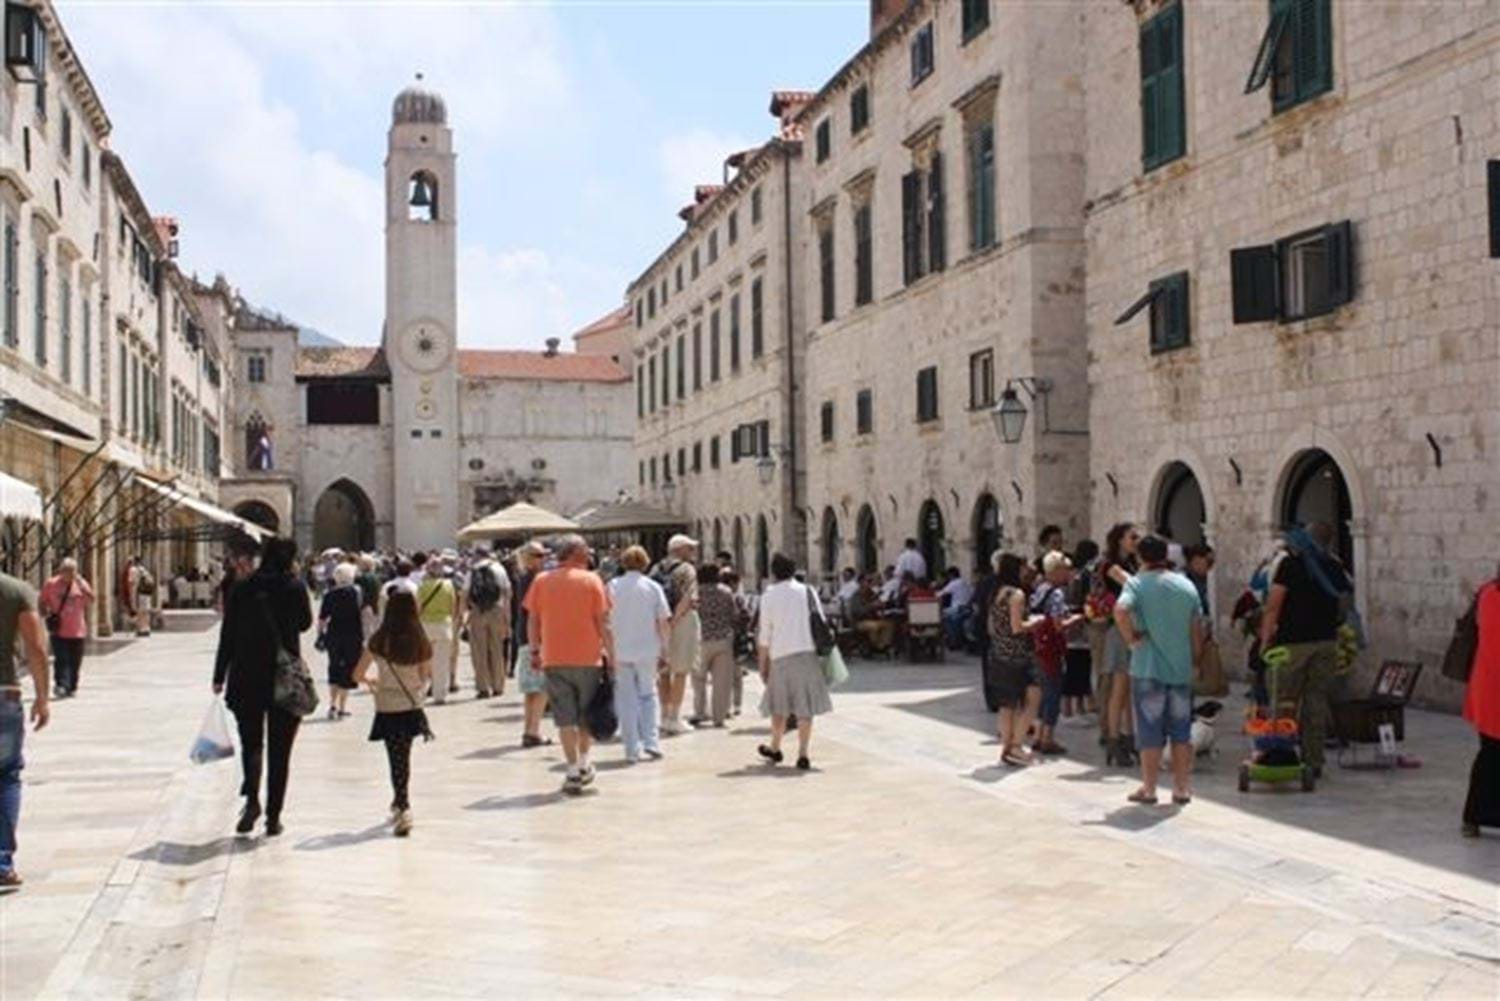 De hoofdstraat van Dubrovnik